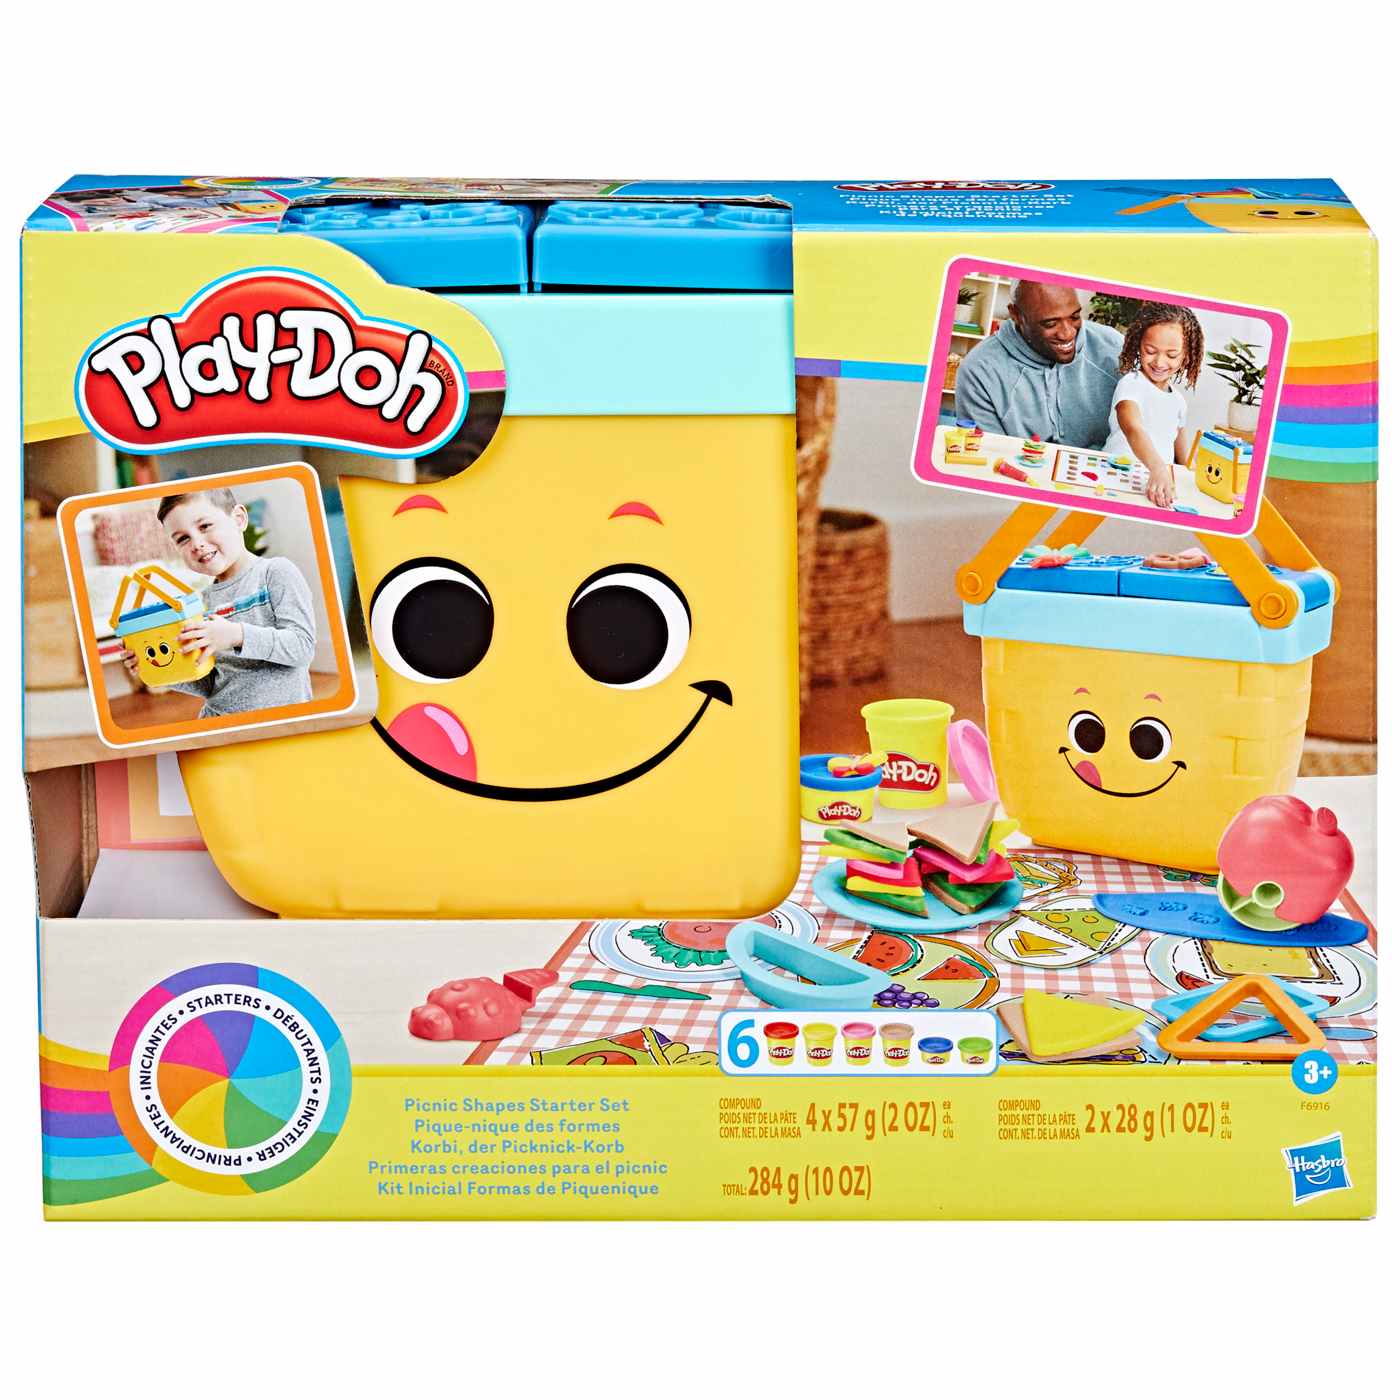 Play-Doh Starter Pack